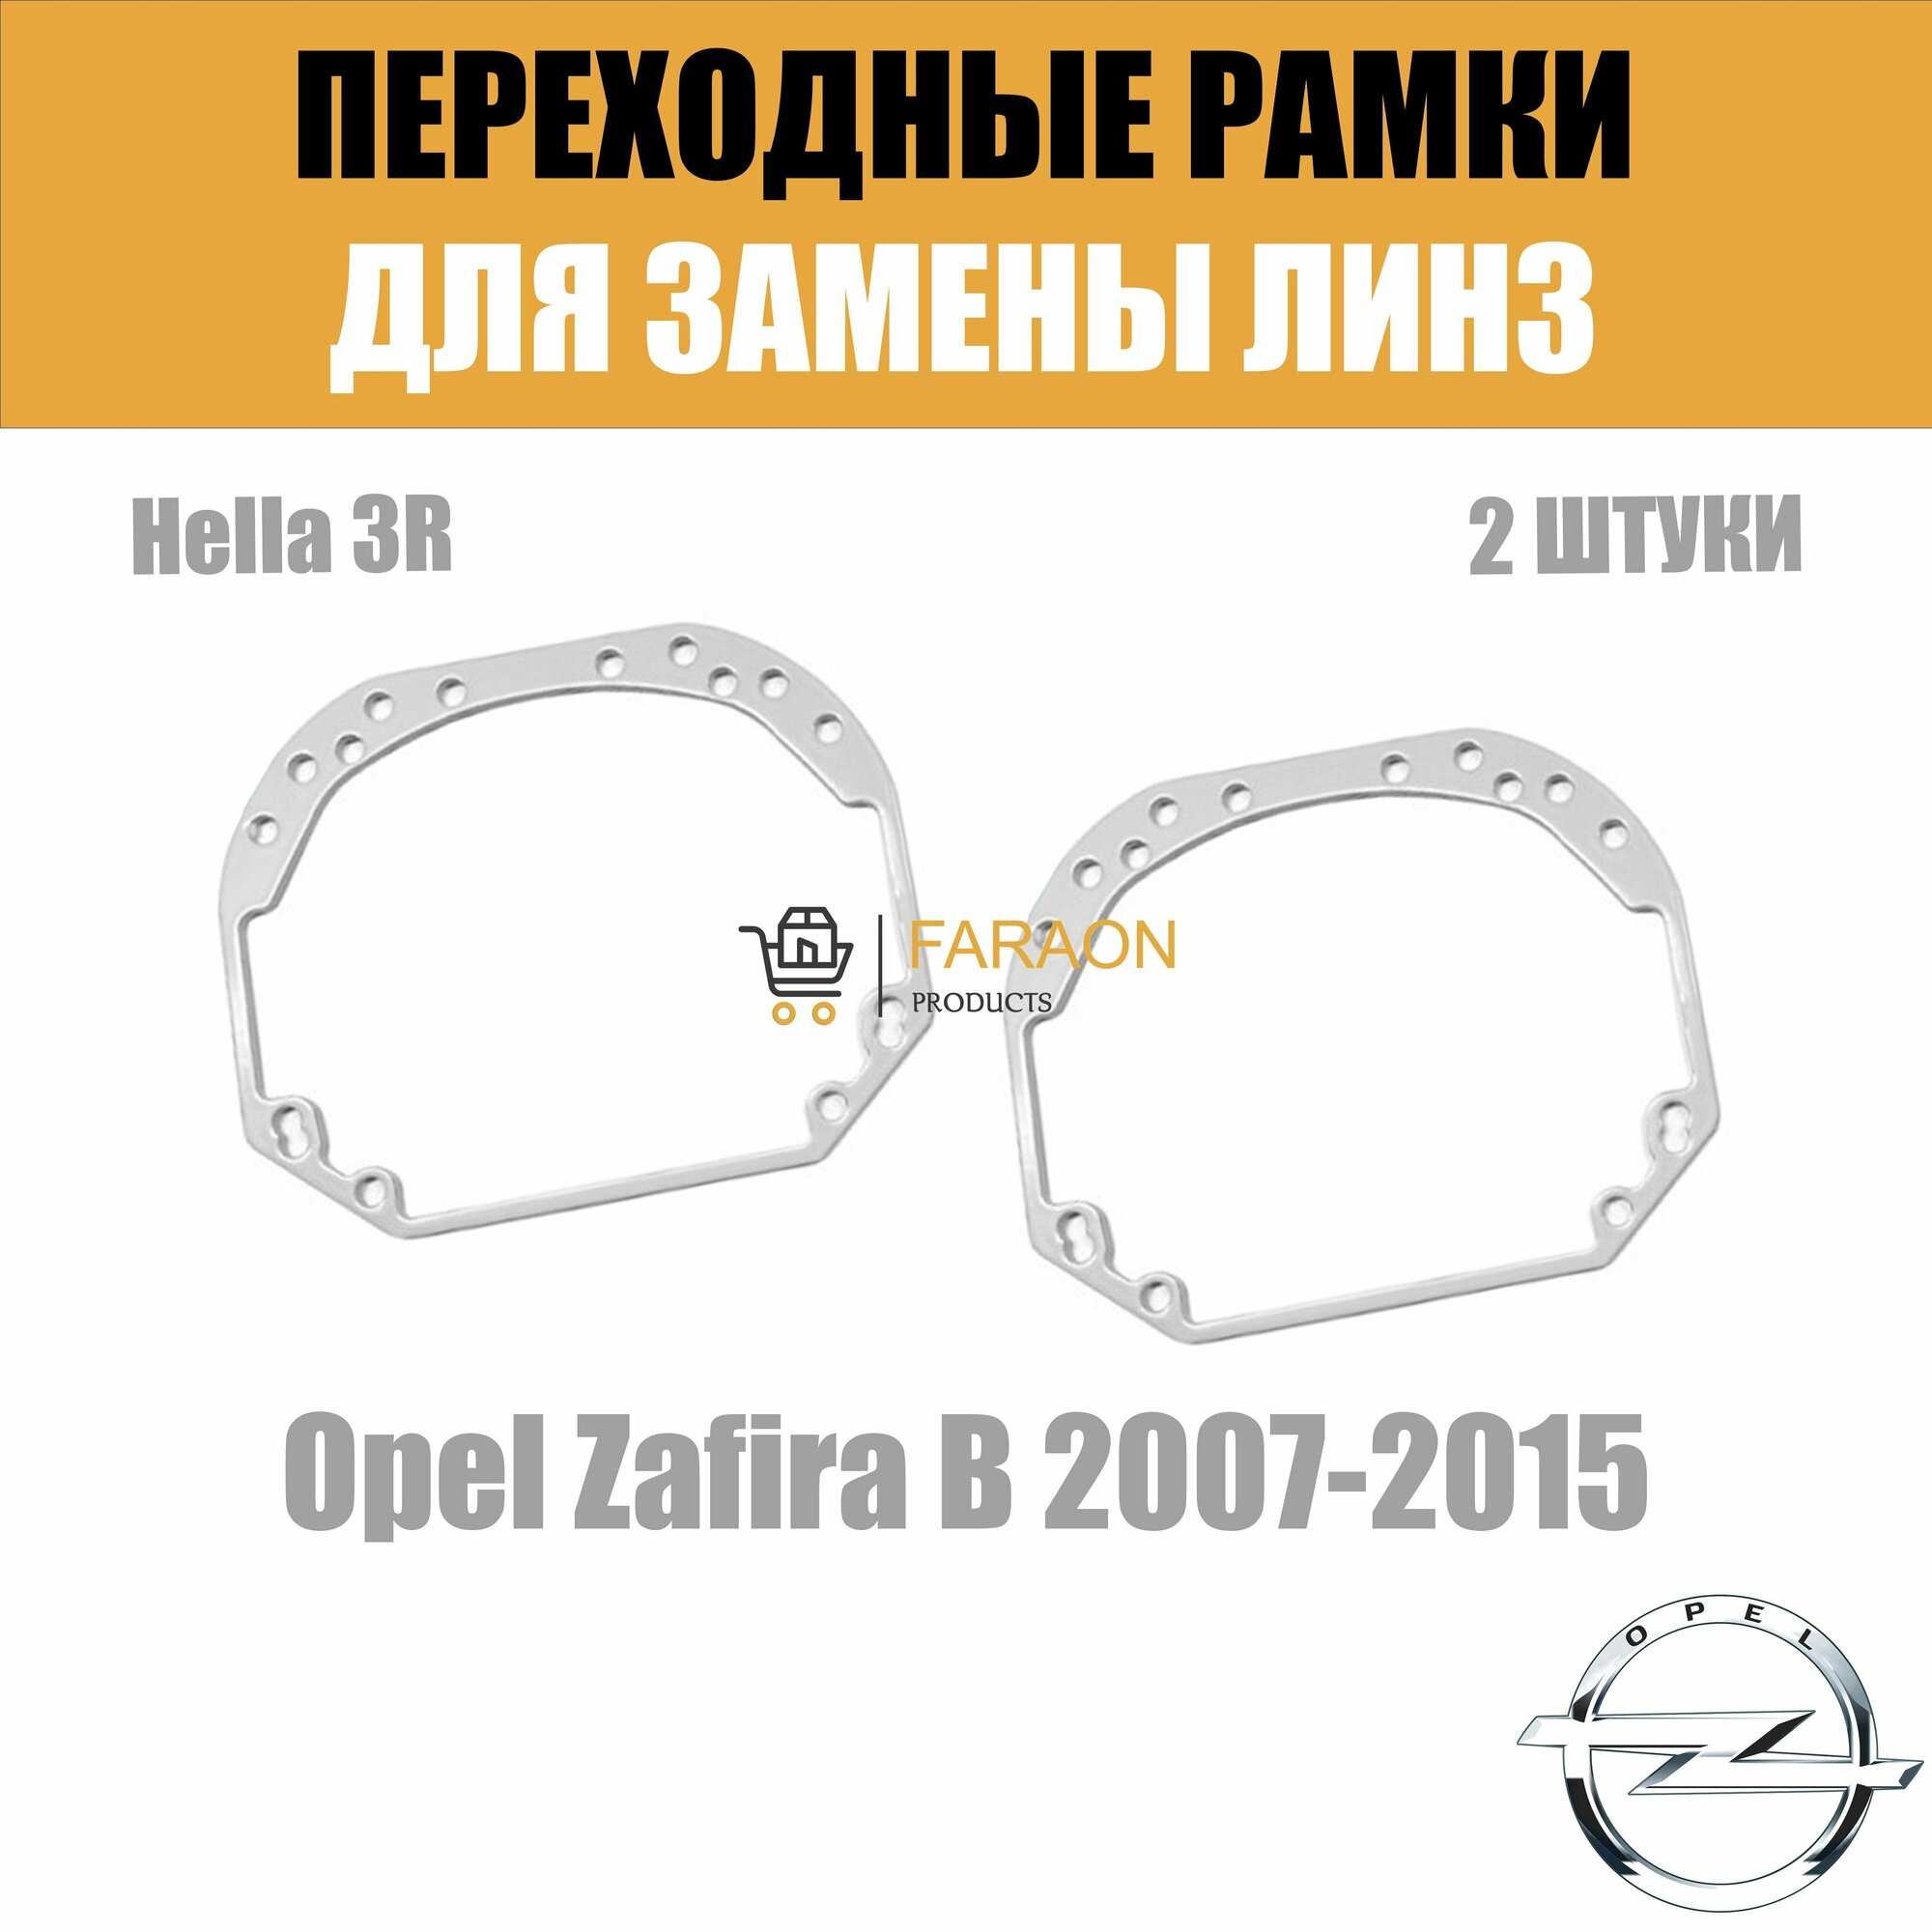 Переходные рамки для замены линз №1 на Opel Zafira B (2007-2015) Крепление Hella 3R